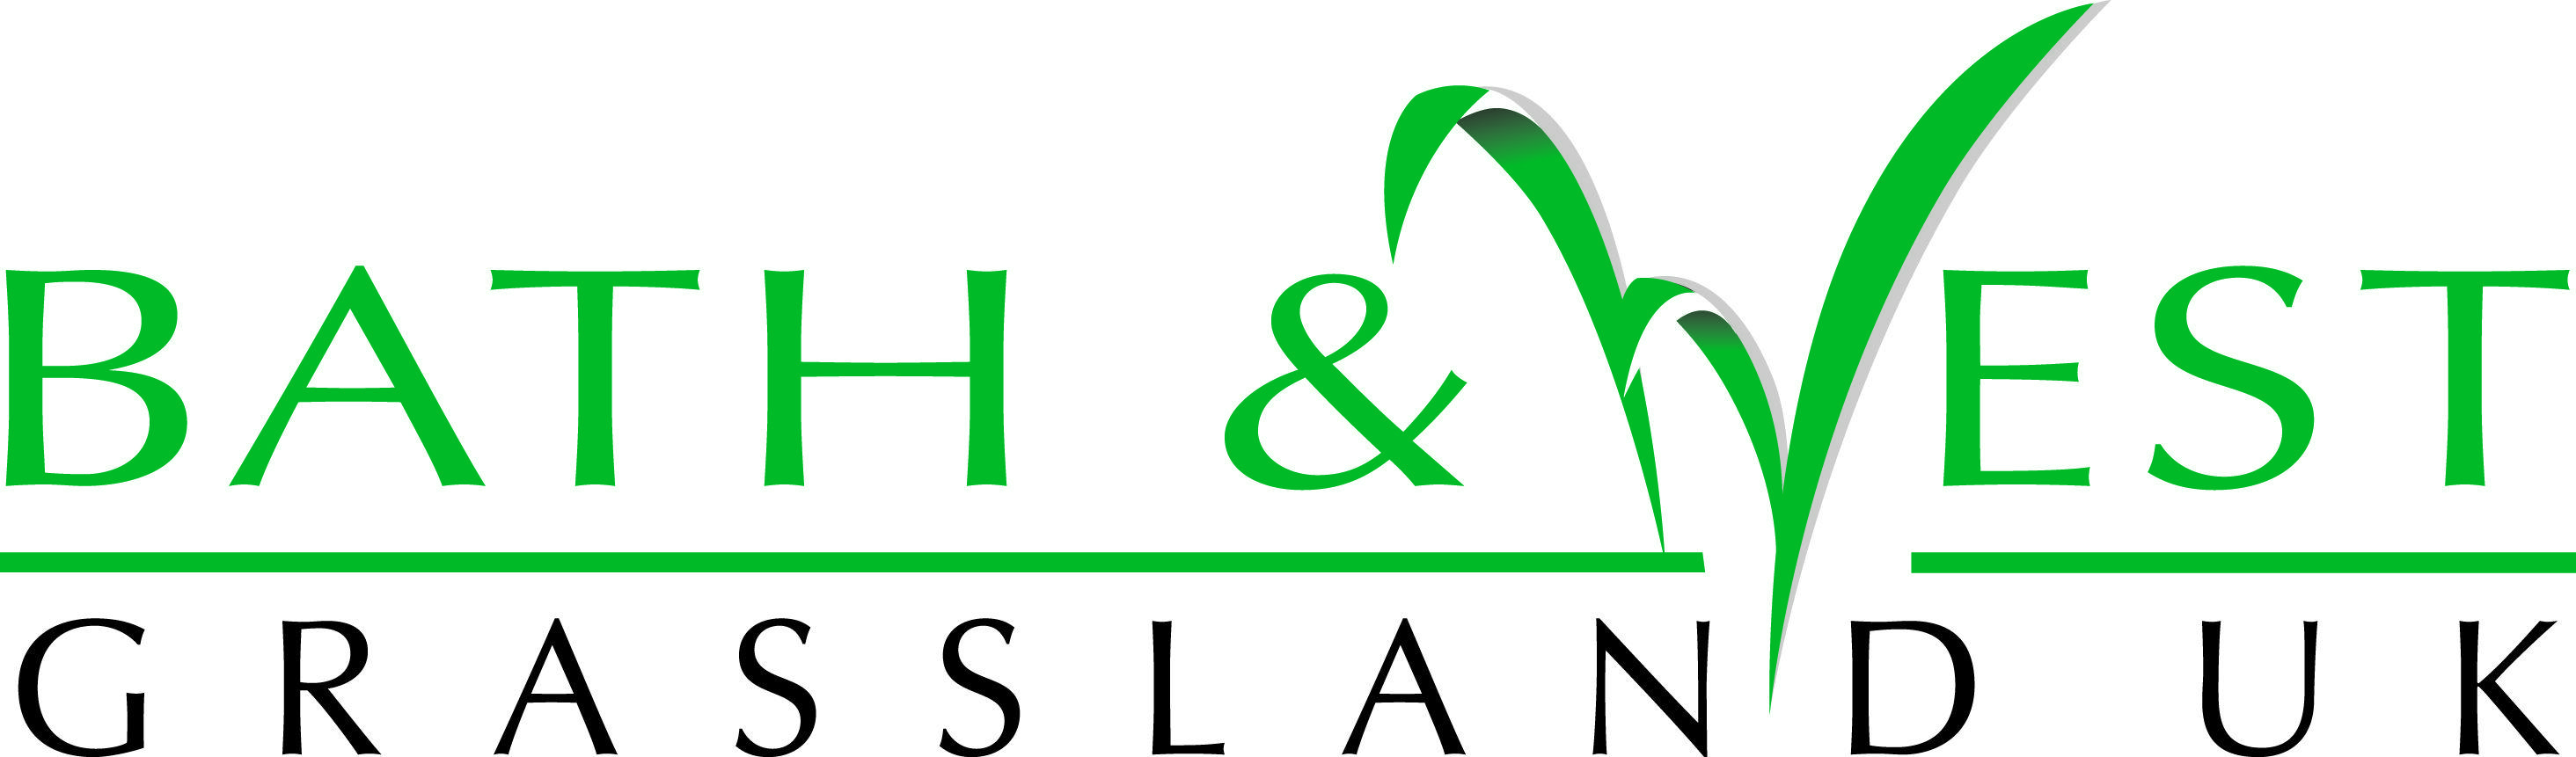 Grassland Logo - Grassland Logo Agri Science With Farming